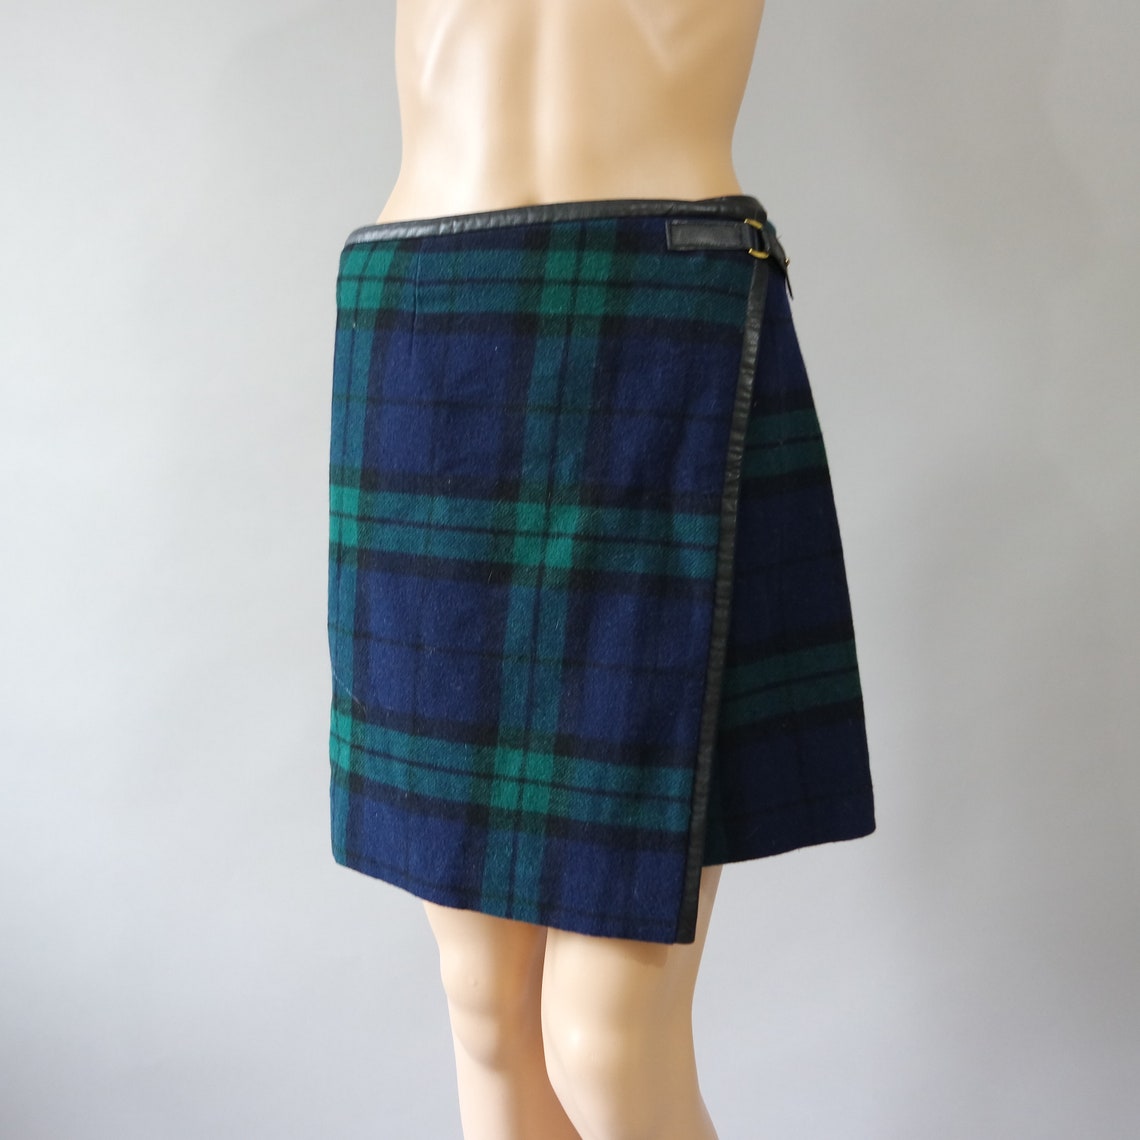 Green Tartan Mini Skirt / Wrap Skirt / Scottish Plaid Skirt / | Etsy